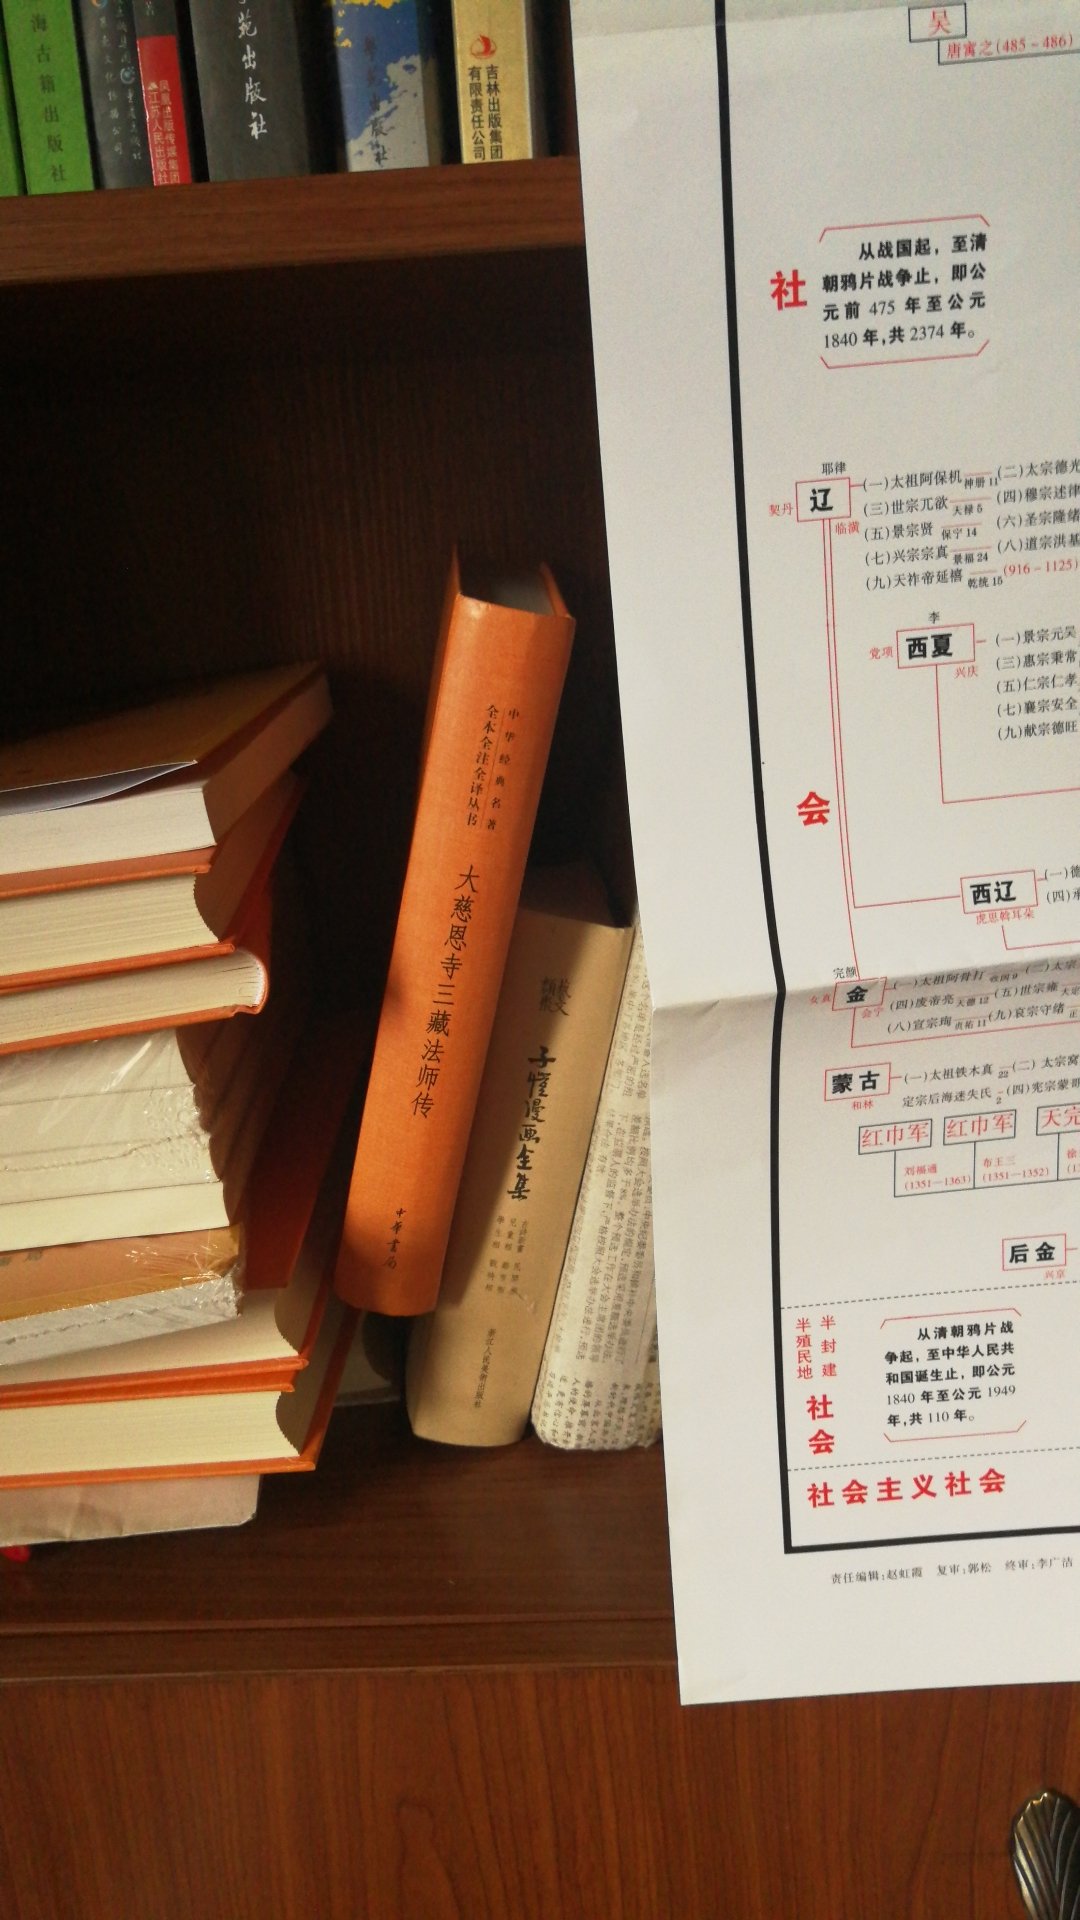 中华书局三全本新版经典，见机而入，何时能读完啊，已读《论语》，《诗经》，《坛经》，《阅微草堂笔记》上，《孟子》在读中。。。